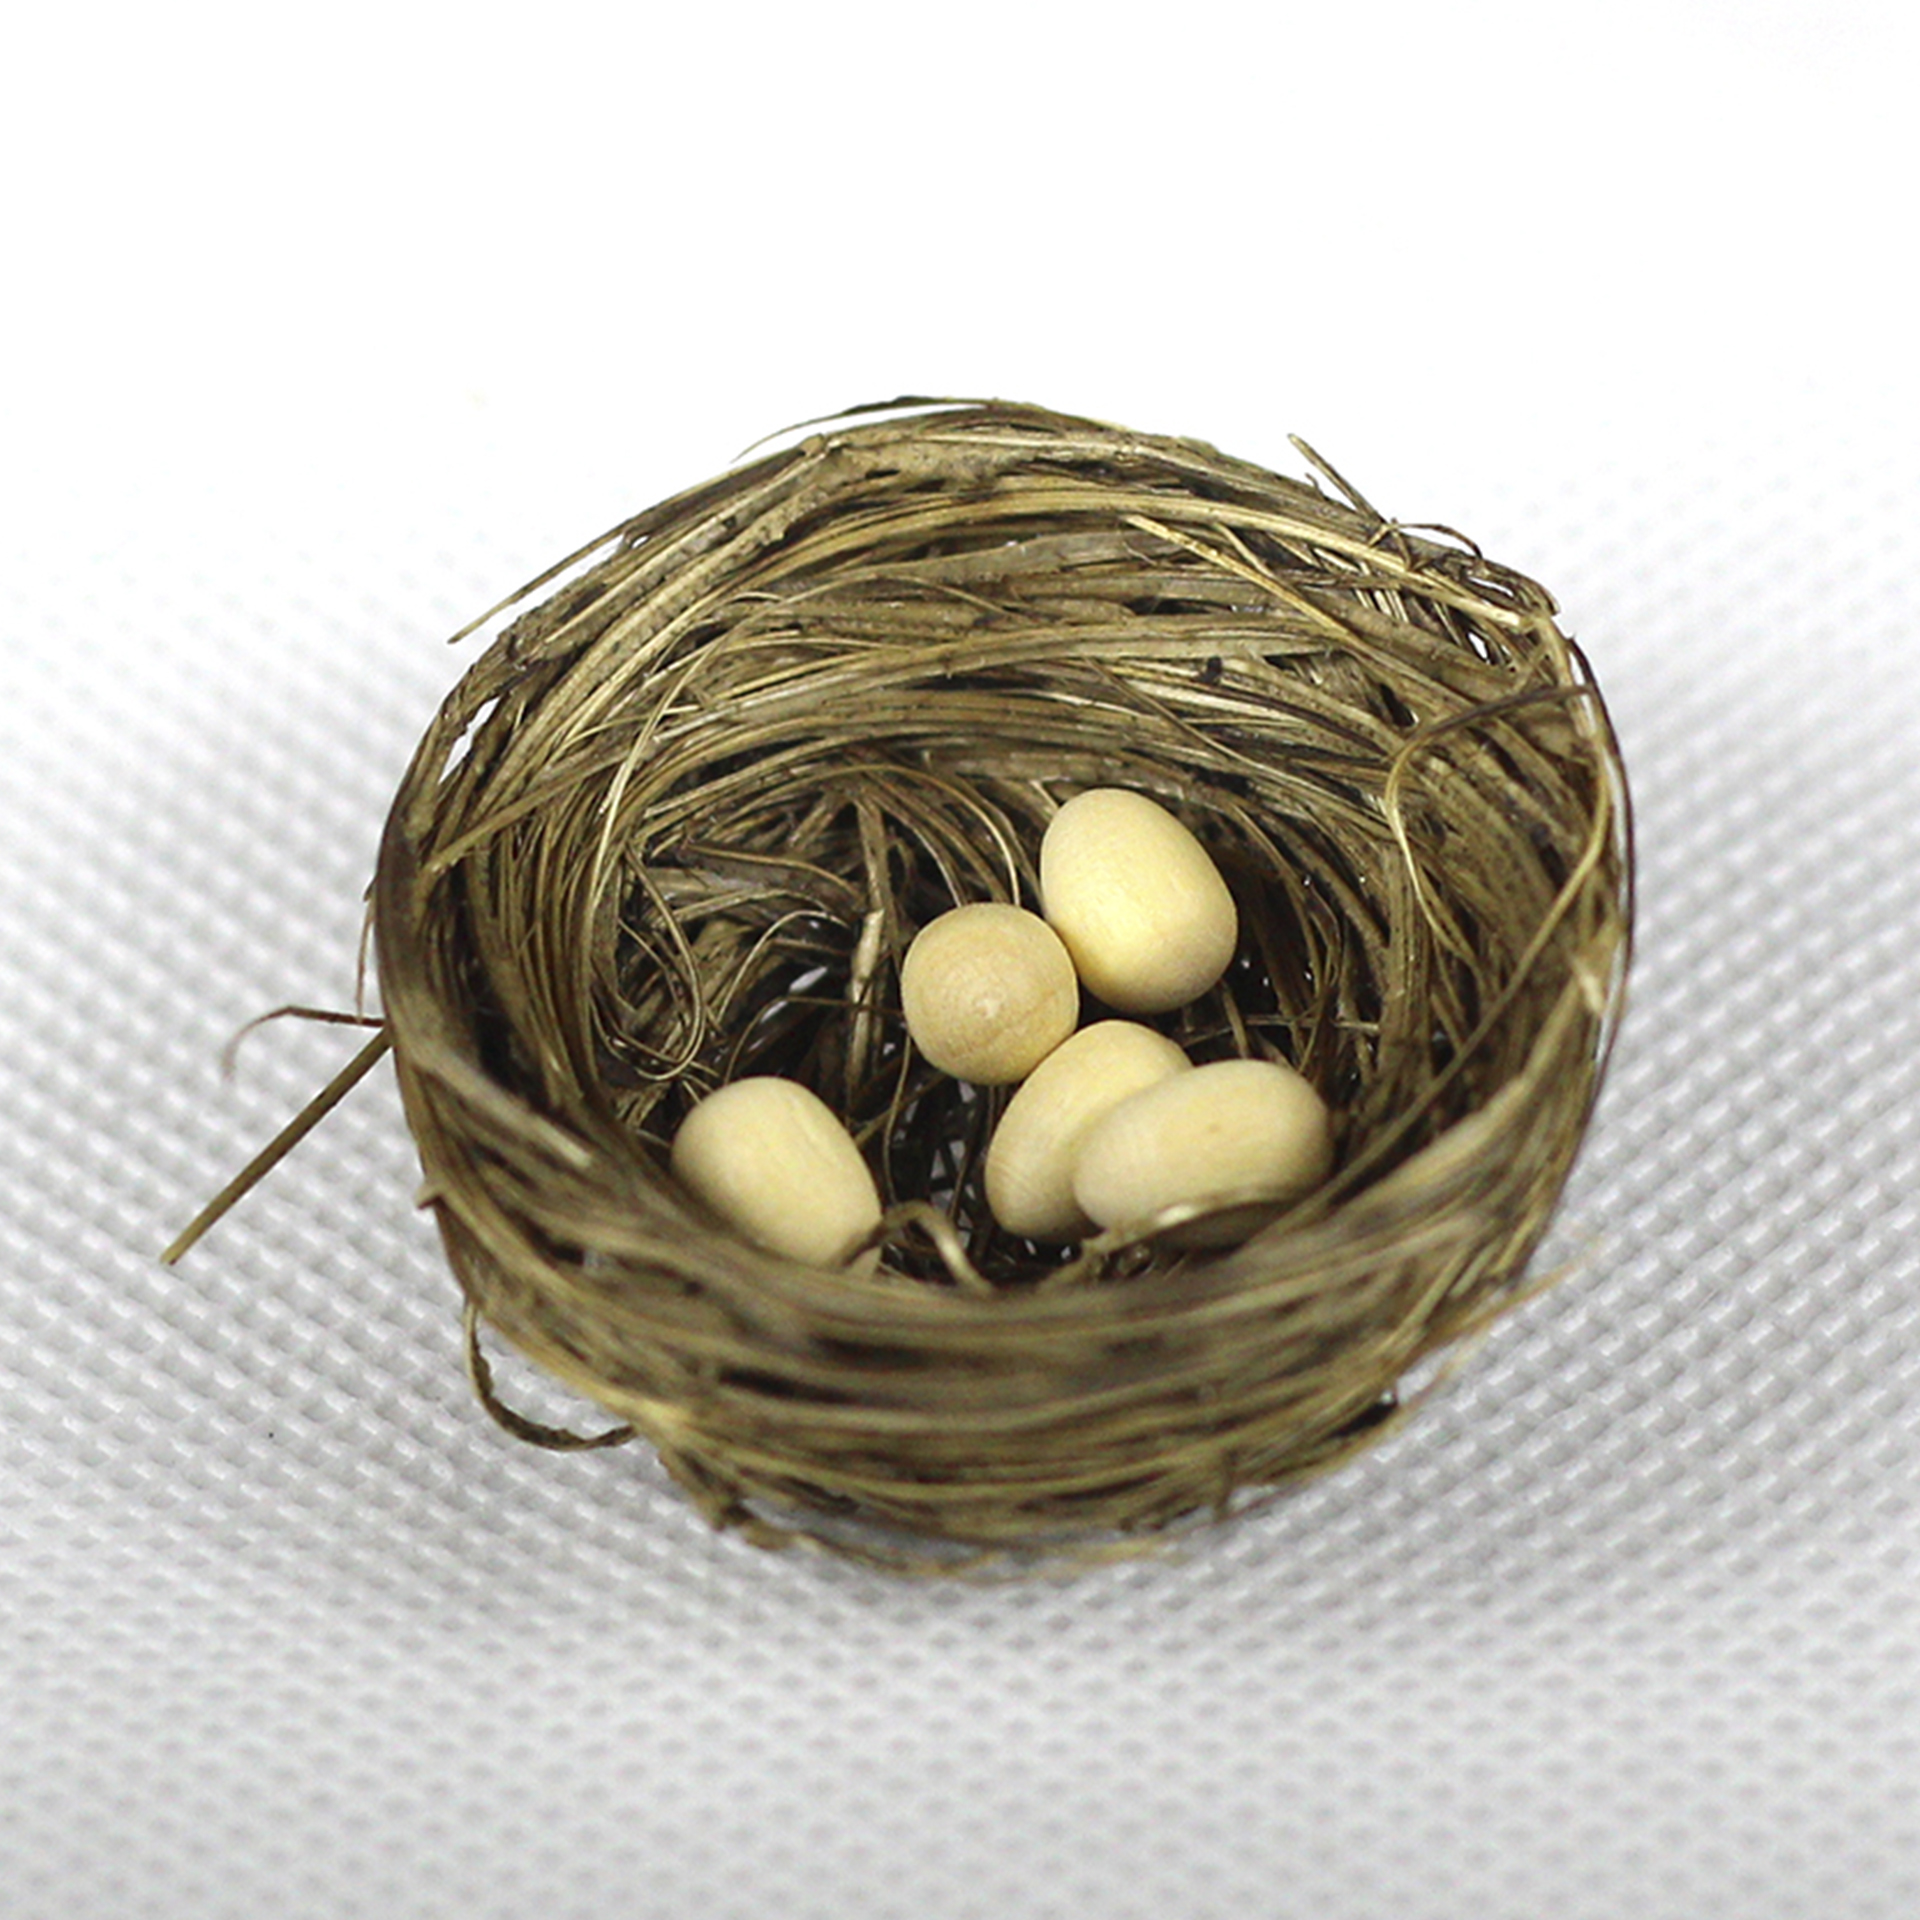 Nest 3cm mit Eiern